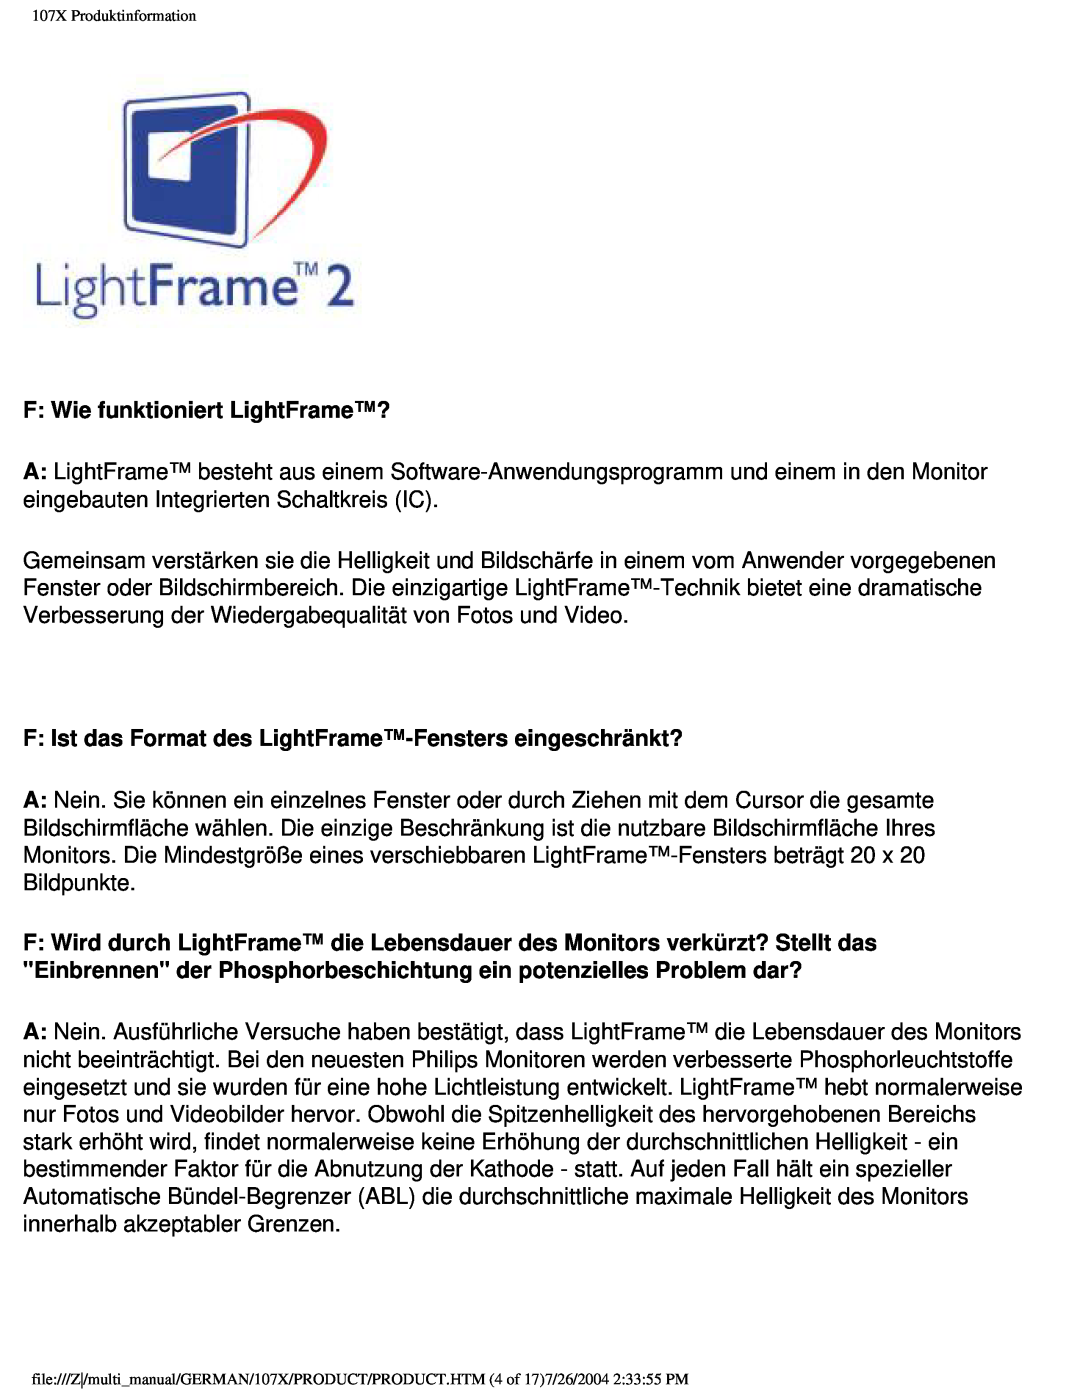 Philips 107X2 user manual F Wie funktioniert LightFrame?, F Ist das Format des LightFrame-Fensters eingeschränkt? 